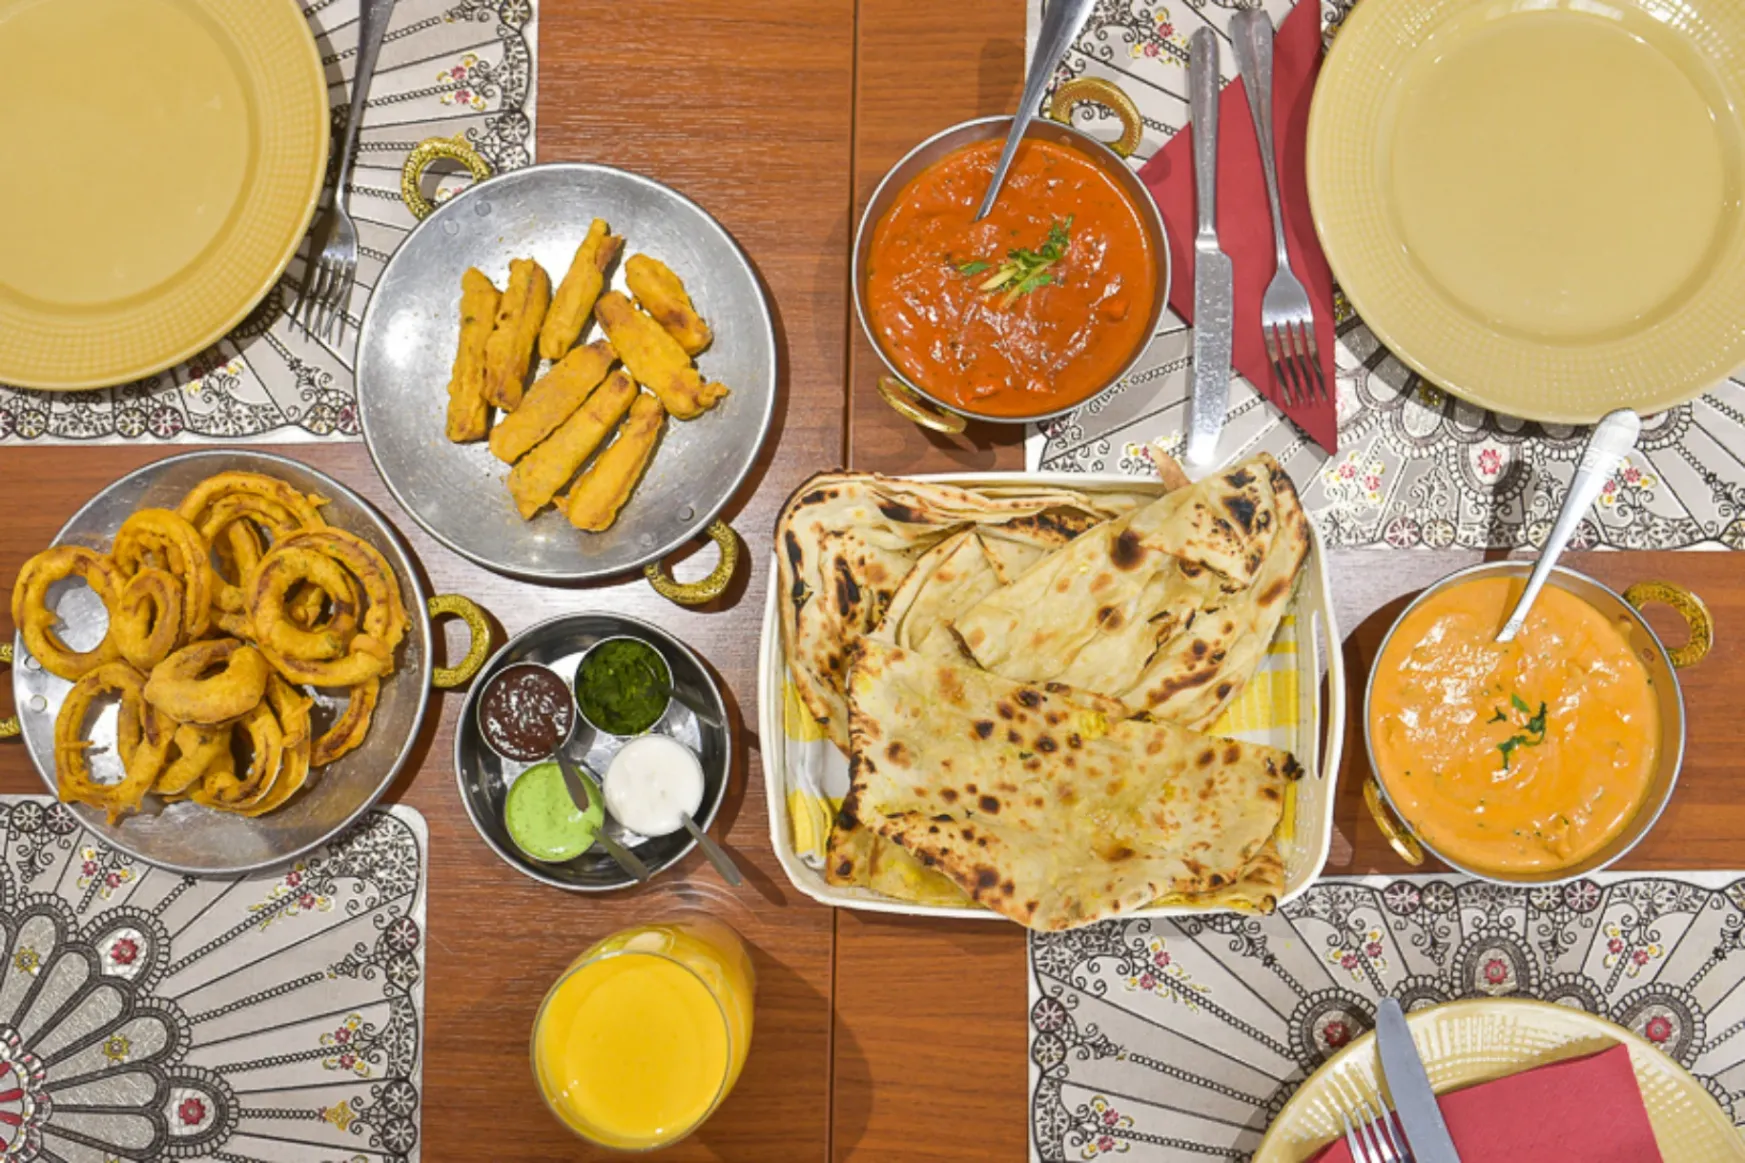 Étteremajánló: a kedvenc indiai helyünk nem trendi, csak tökéletes